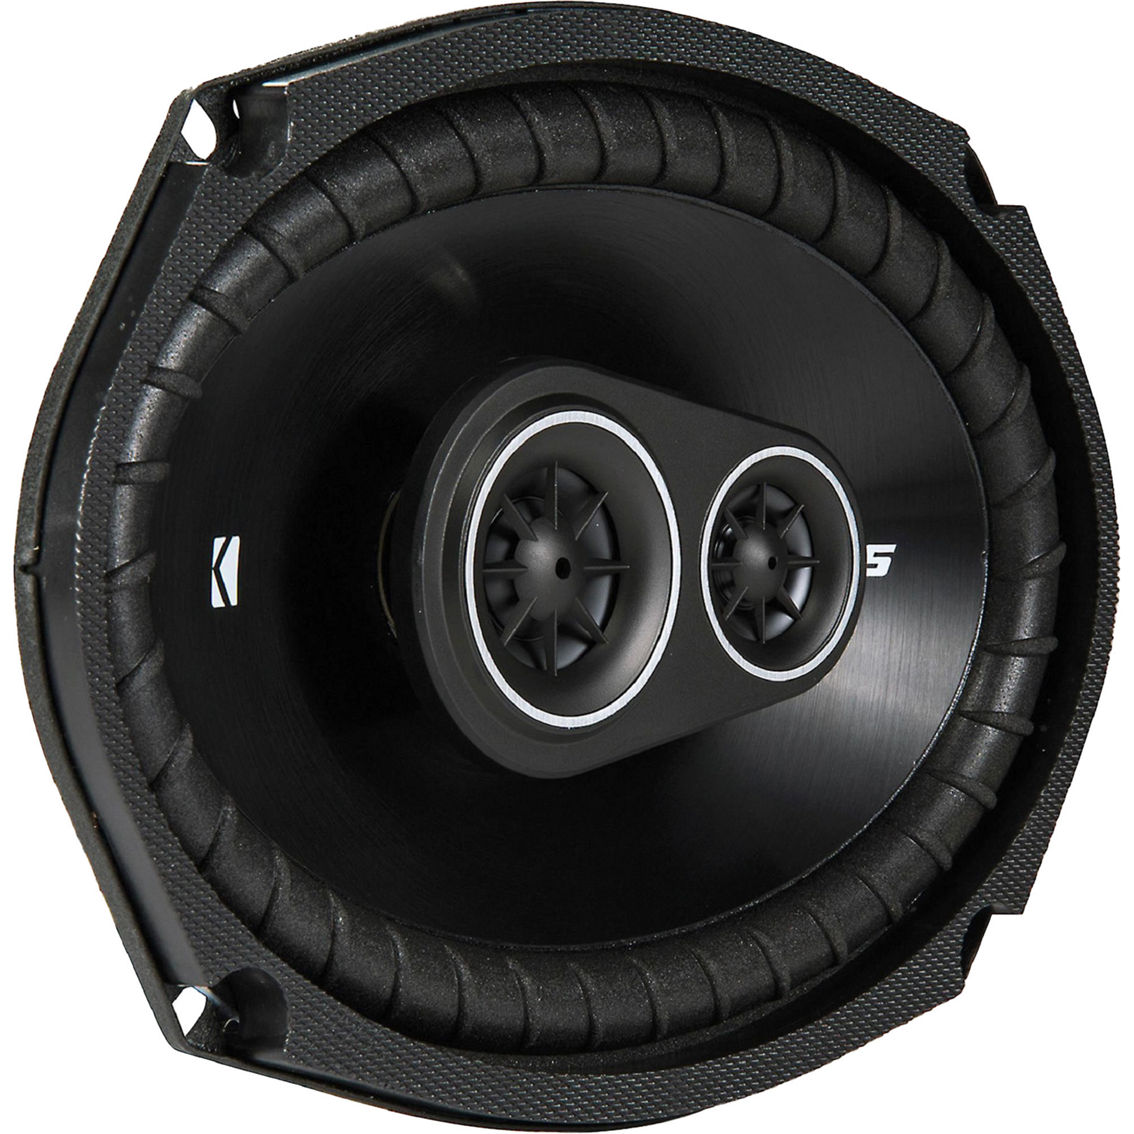 Kicker DS Series 6 in. x 9 in. 3 Way Car Speakers - Image 5 of 6